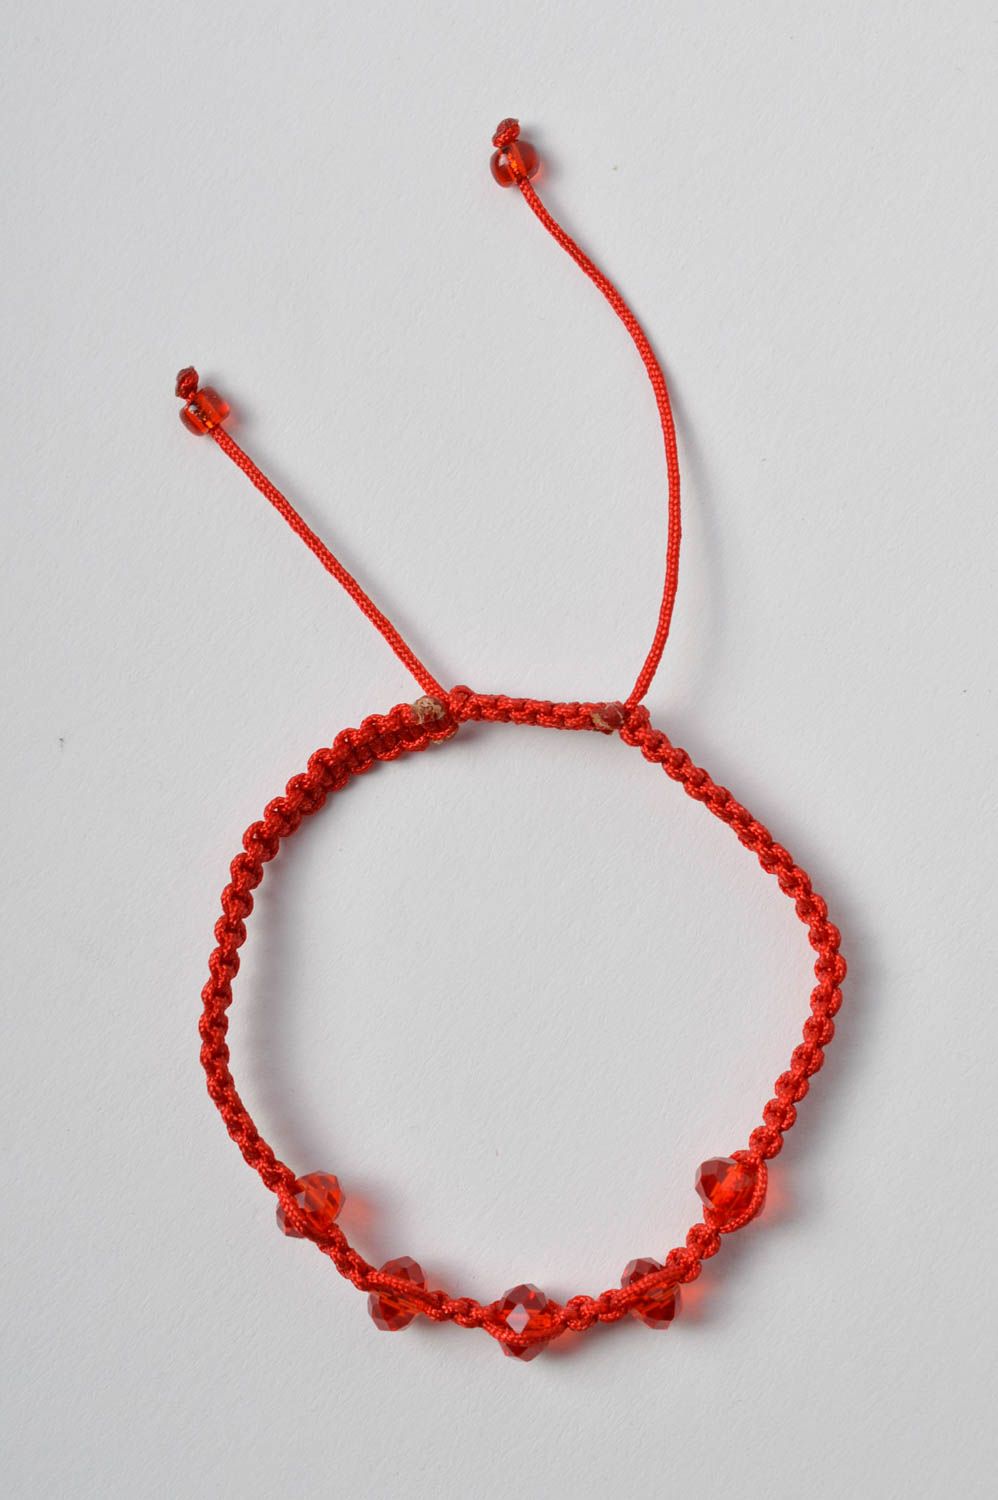 Браслет ручной работы браслет из ниток красный детский браслет на завязках фото 2